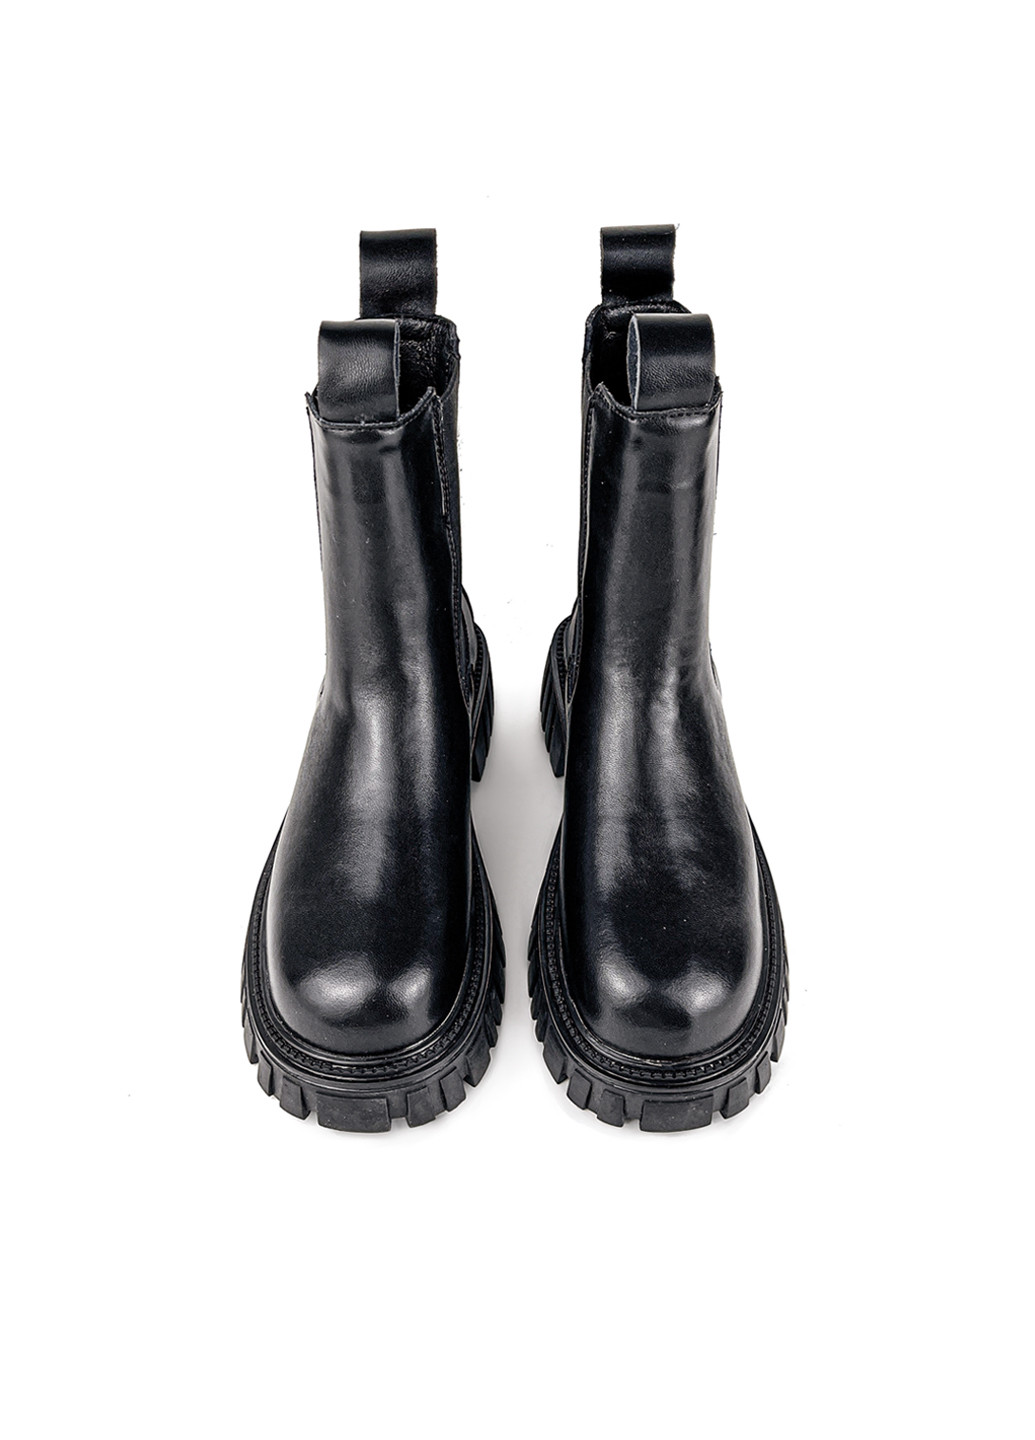 Осенние ботинки женские молодежные черные кожаные на тракторной подошве челси Fashion